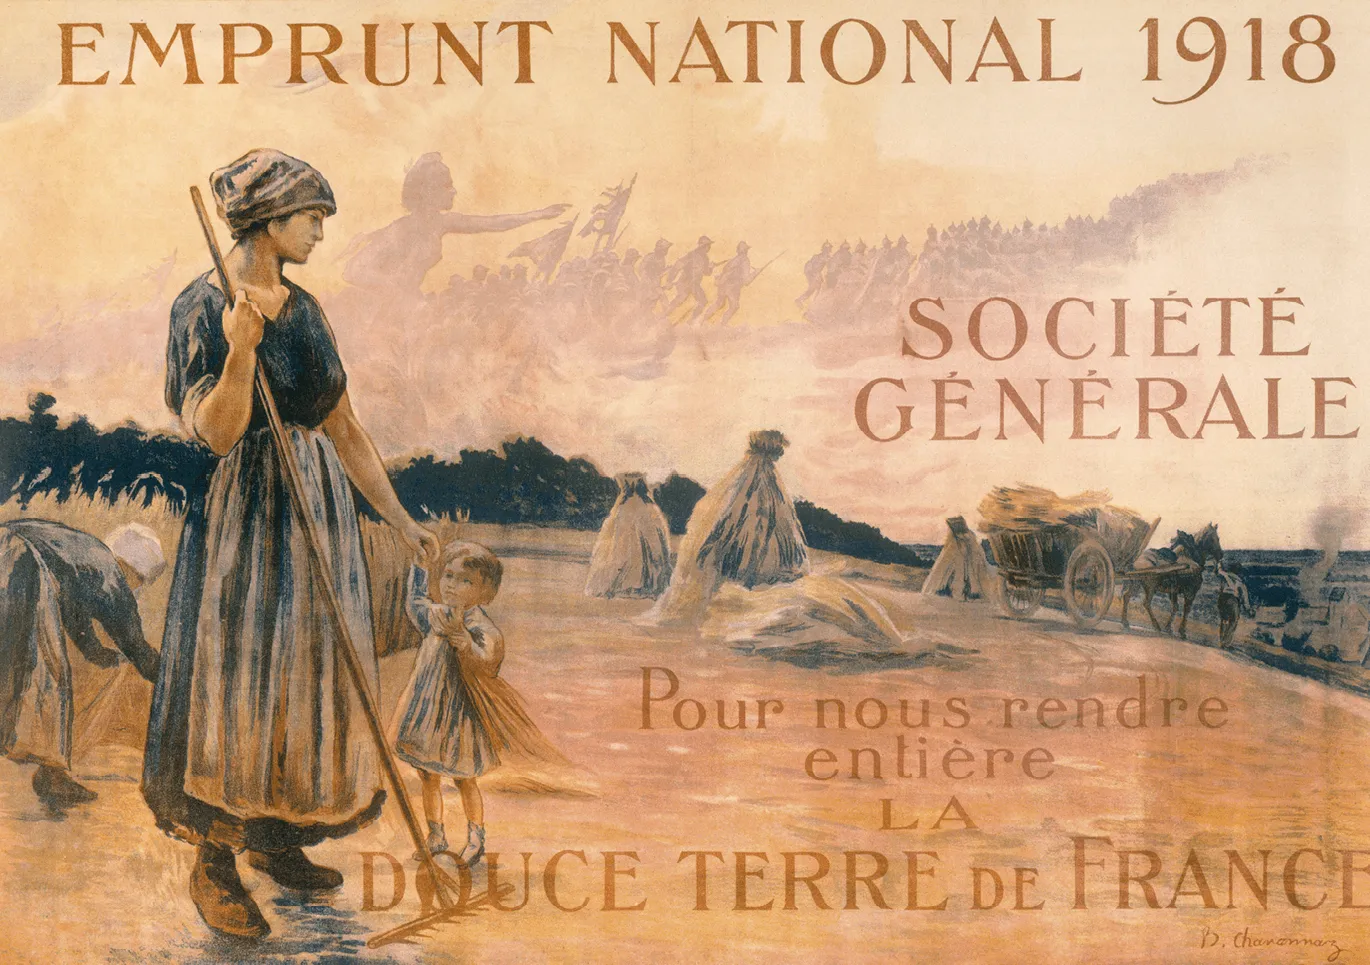 Emprunt national 1918 - Société générale